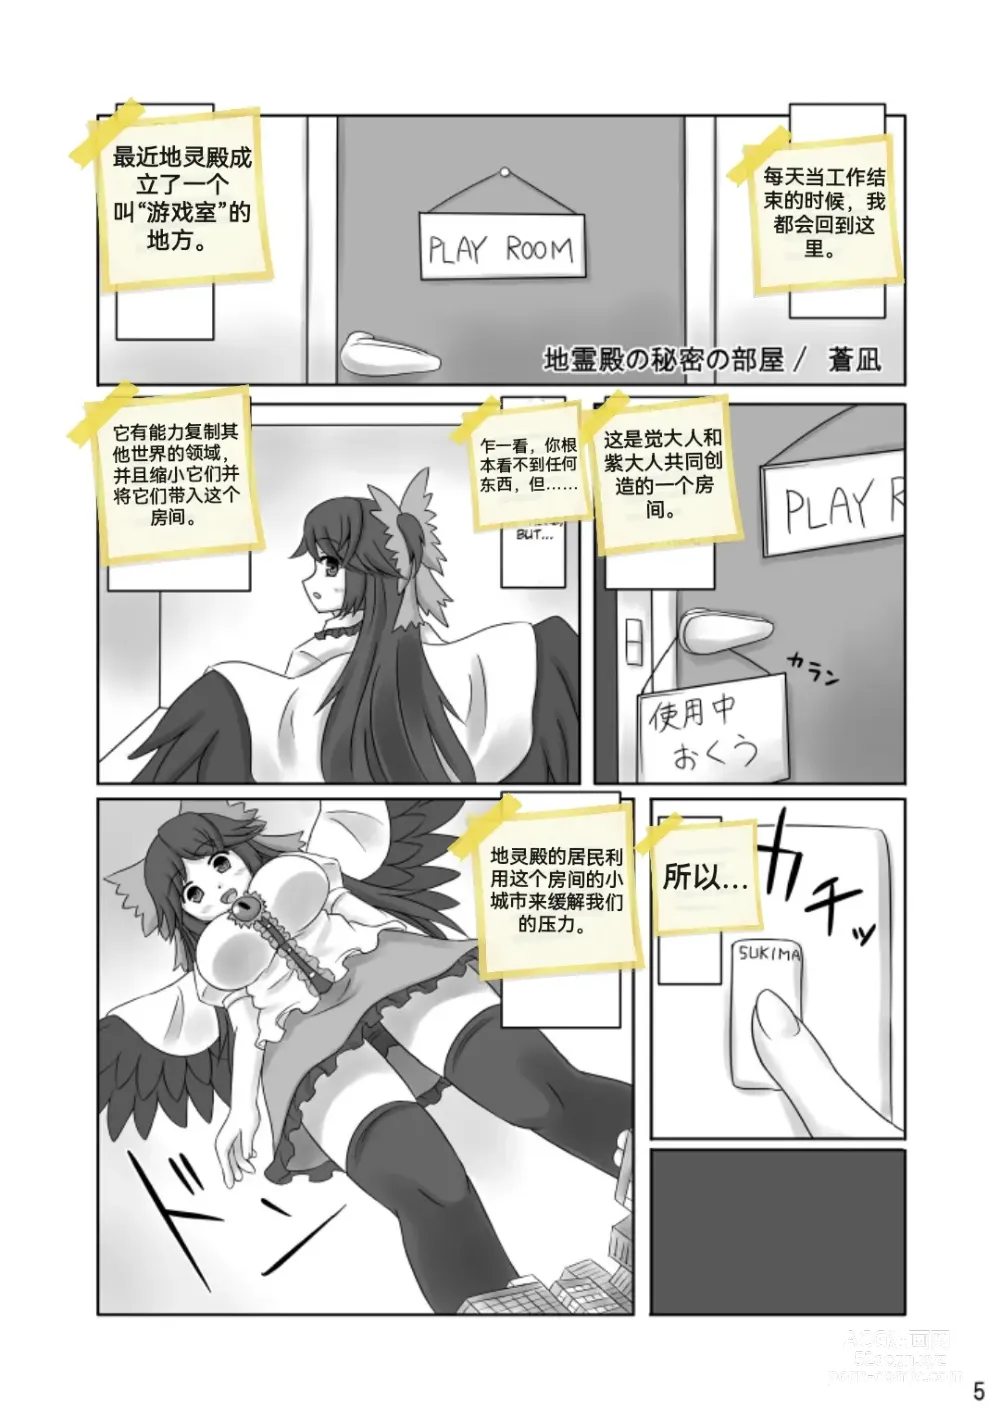 Page 28 of doujinshi 自我翻译（七）gw论坛转载，落叶秋风